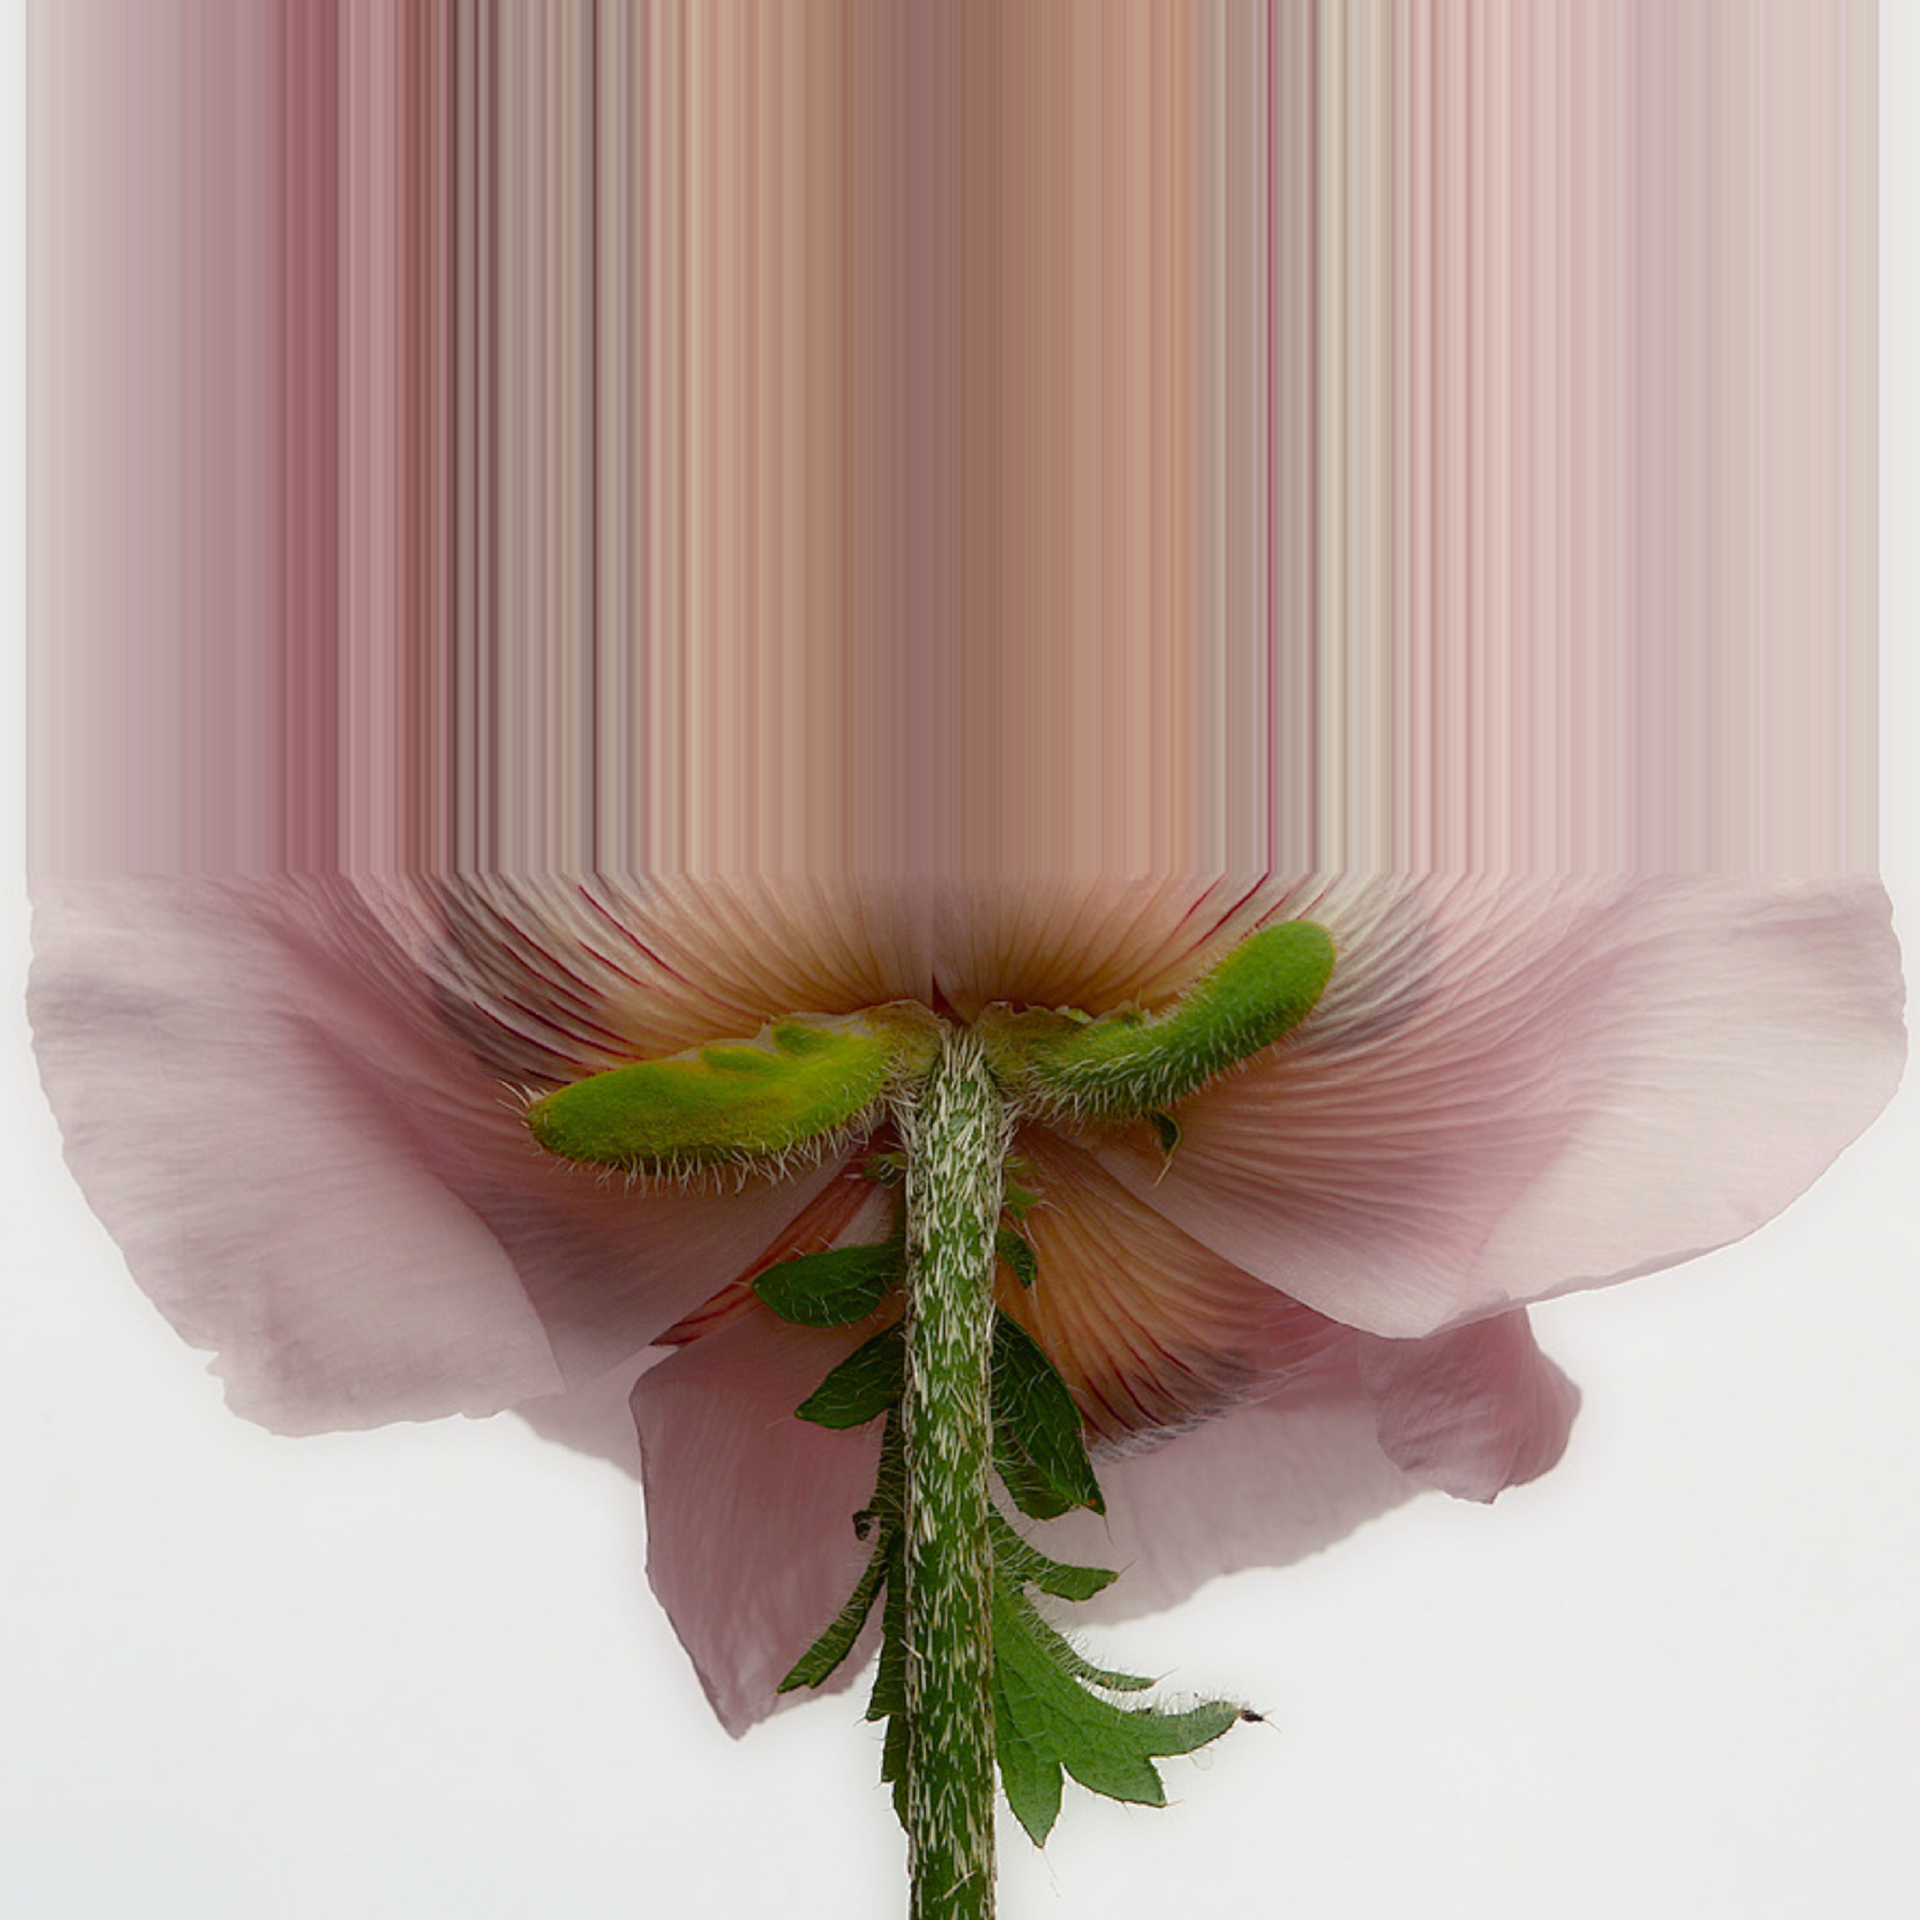 Pink Flower Glitch Art #1 by Oz Van Rosen